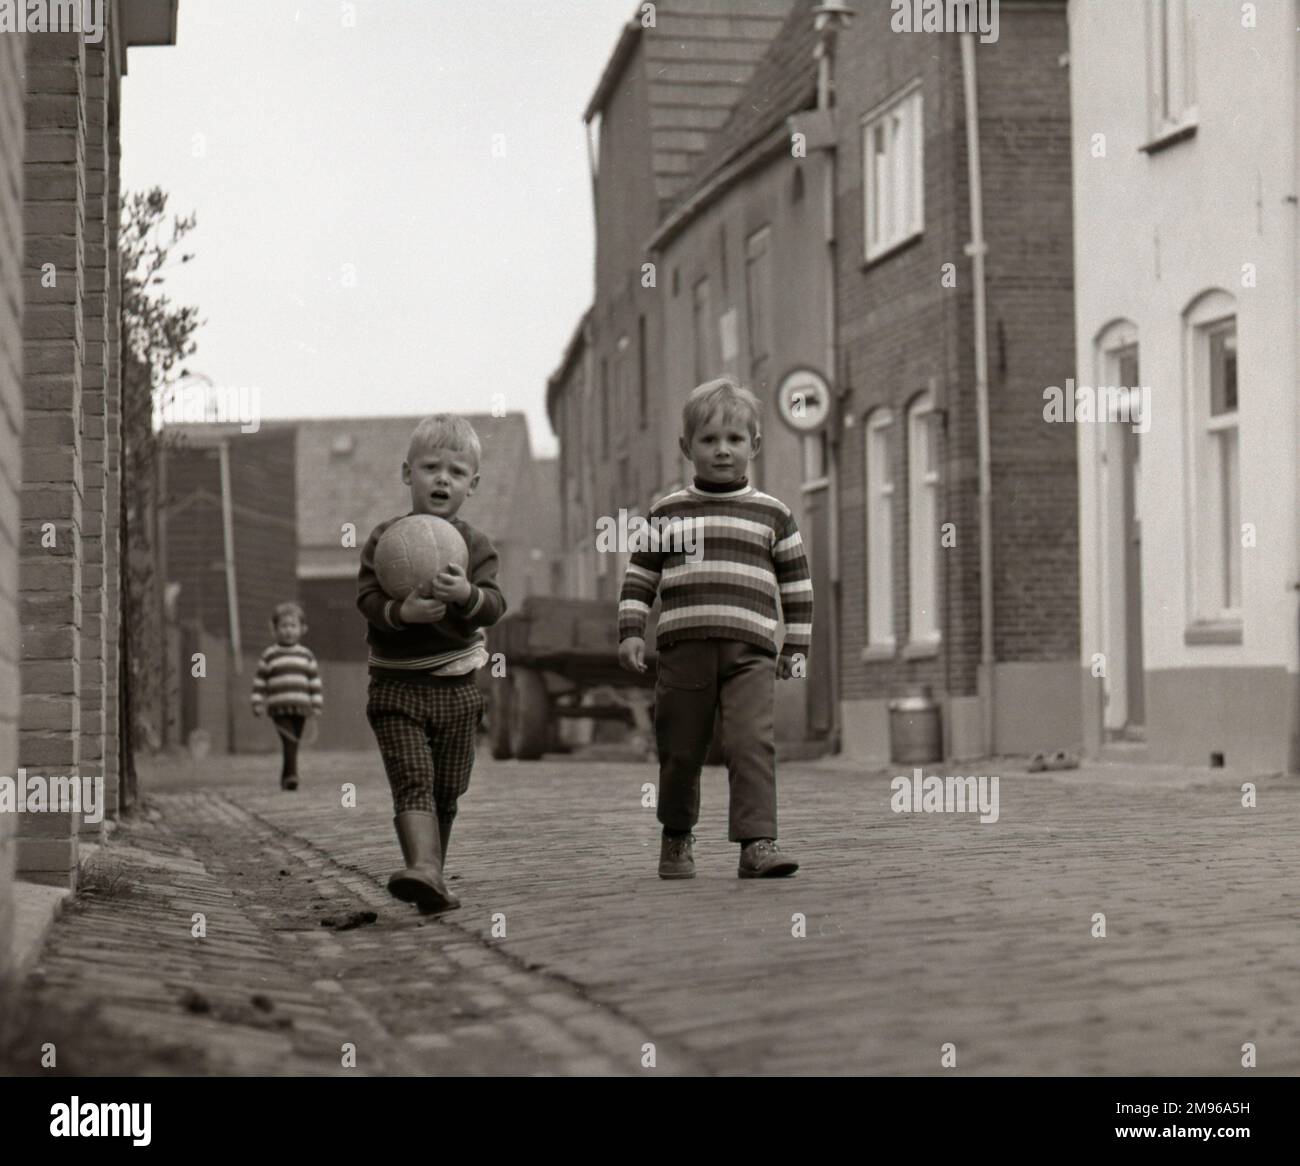 Zwei kleine Jungs auf der Straße, einer in einem gestreiften Pullover und der andere mit seinem Football. Stockfoto